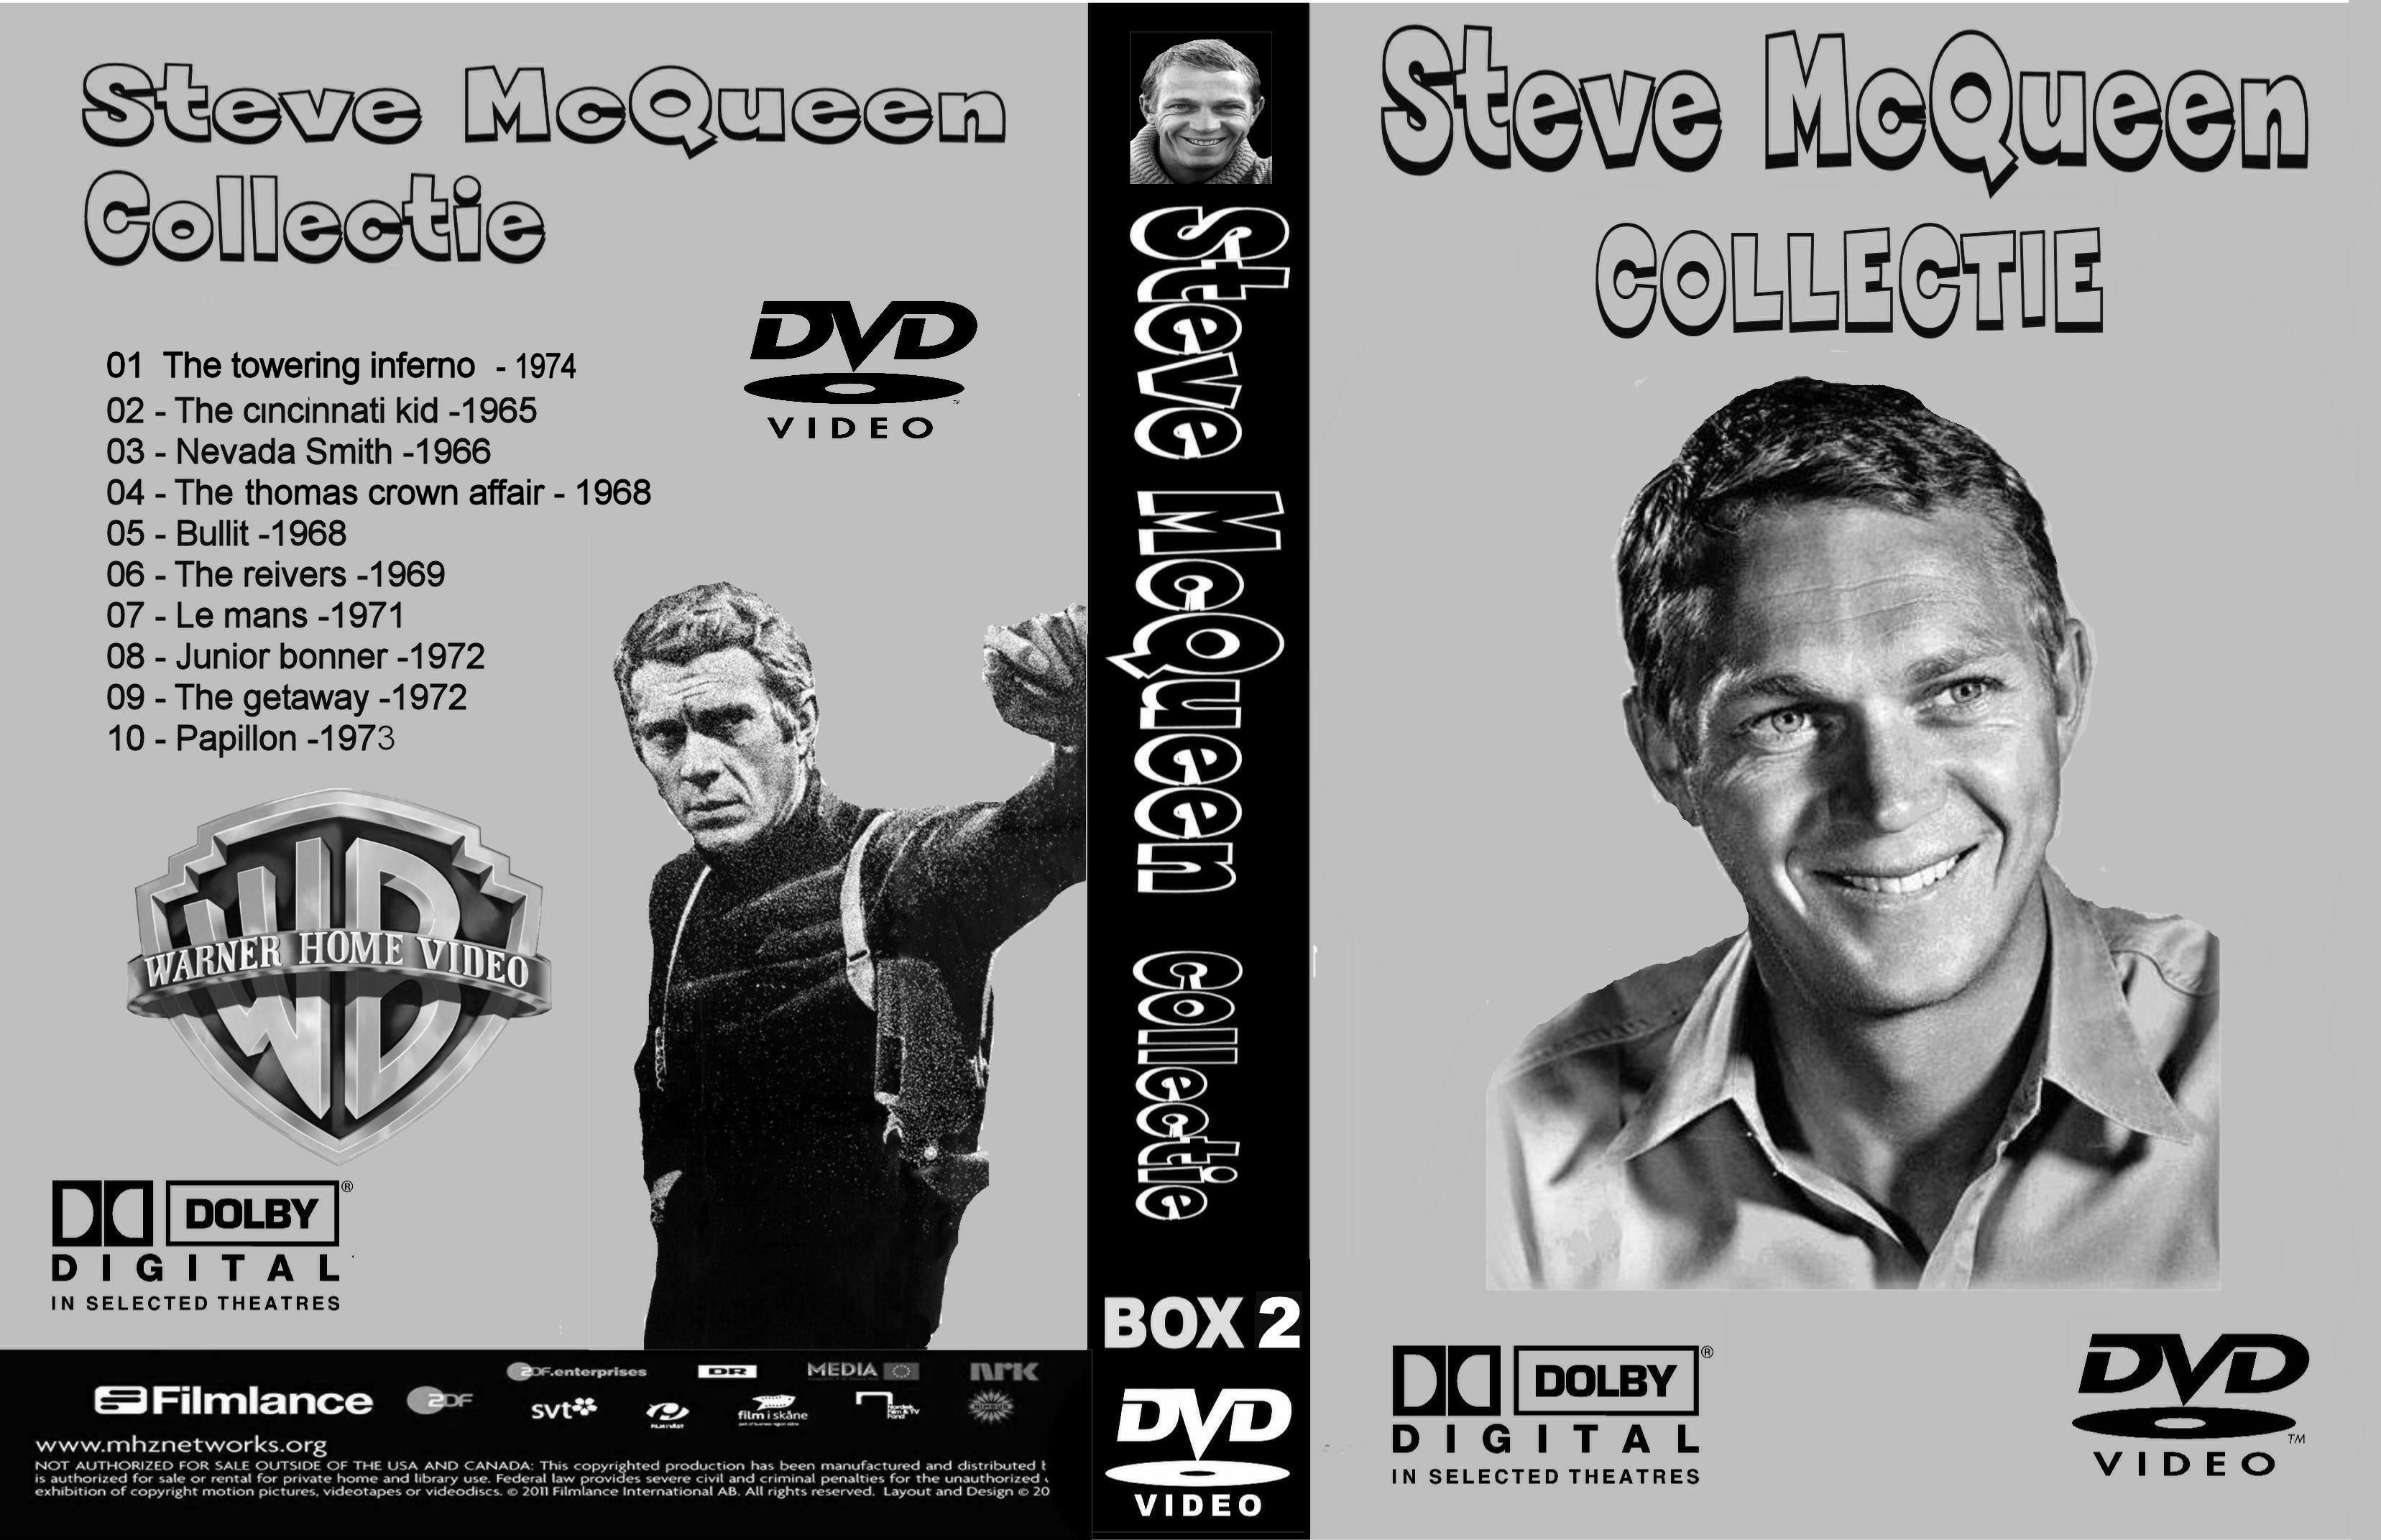 Steve McQueen Collectie Box 2 DvD 2 van 10